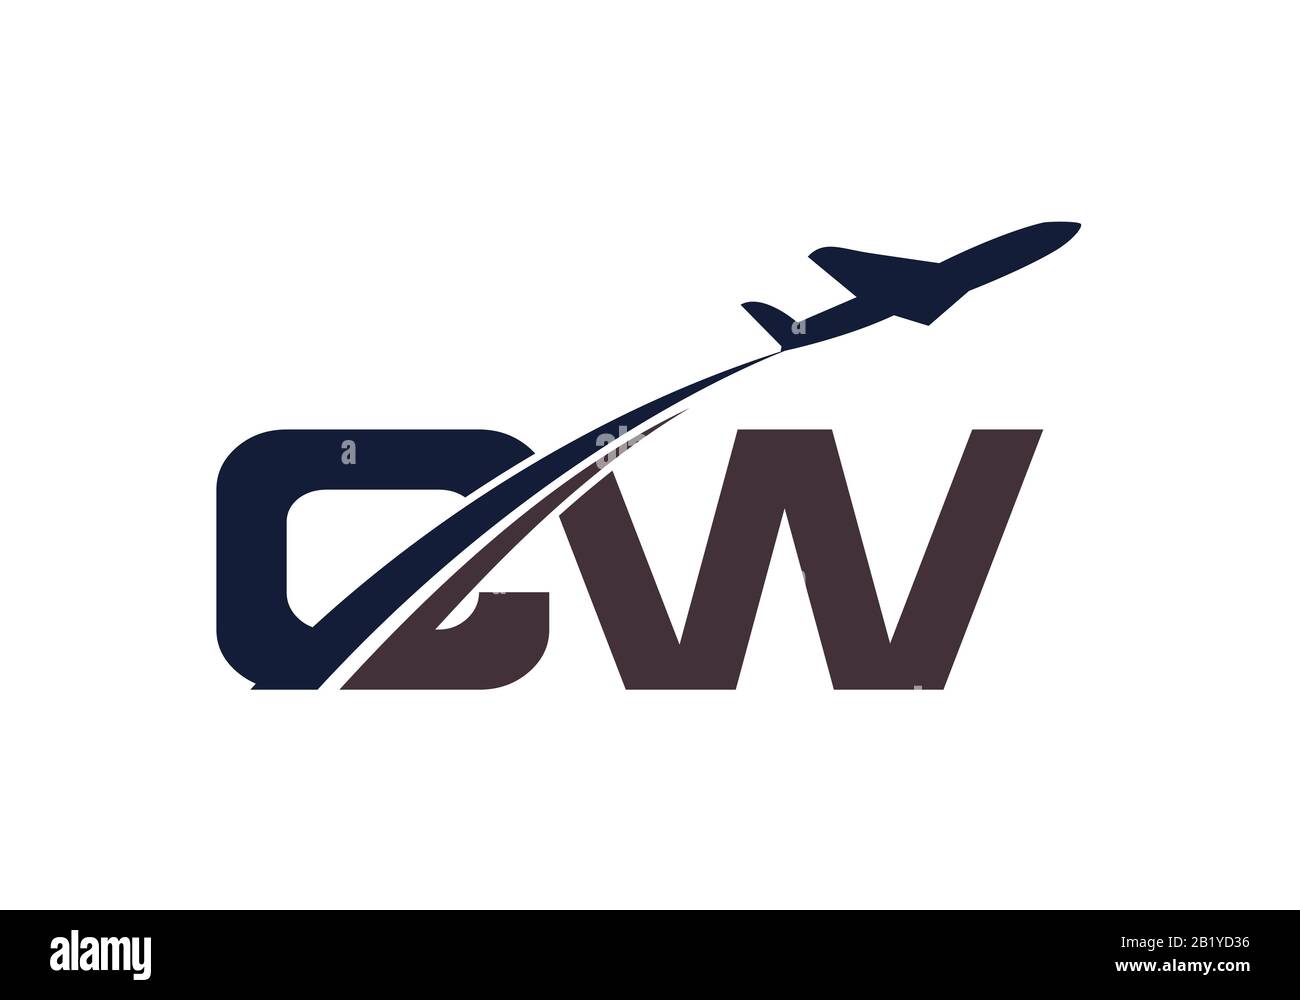 Lettera iniziale C e W con logo Aviation, modello Air, Airline, Airplane e Travel Logo. Illustrazione Vettoriale